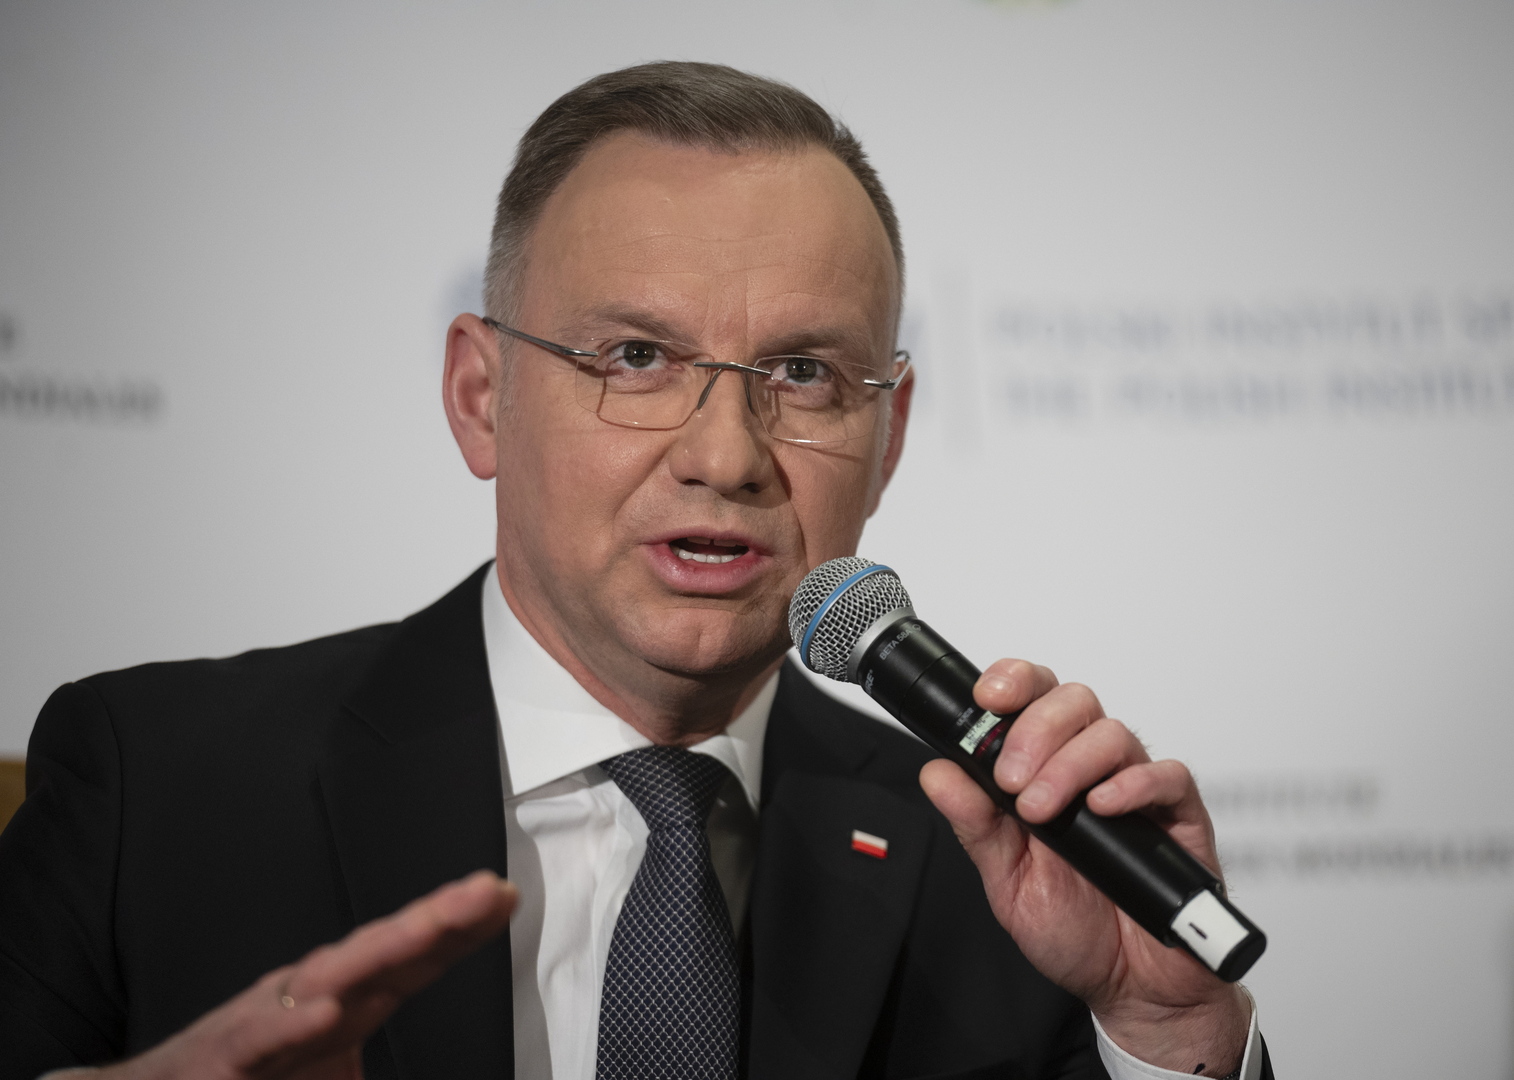 الرئيس البولندي يعلن أن بلاده لم تتخذ بعد قرارا حول نشر أسلحة نووية